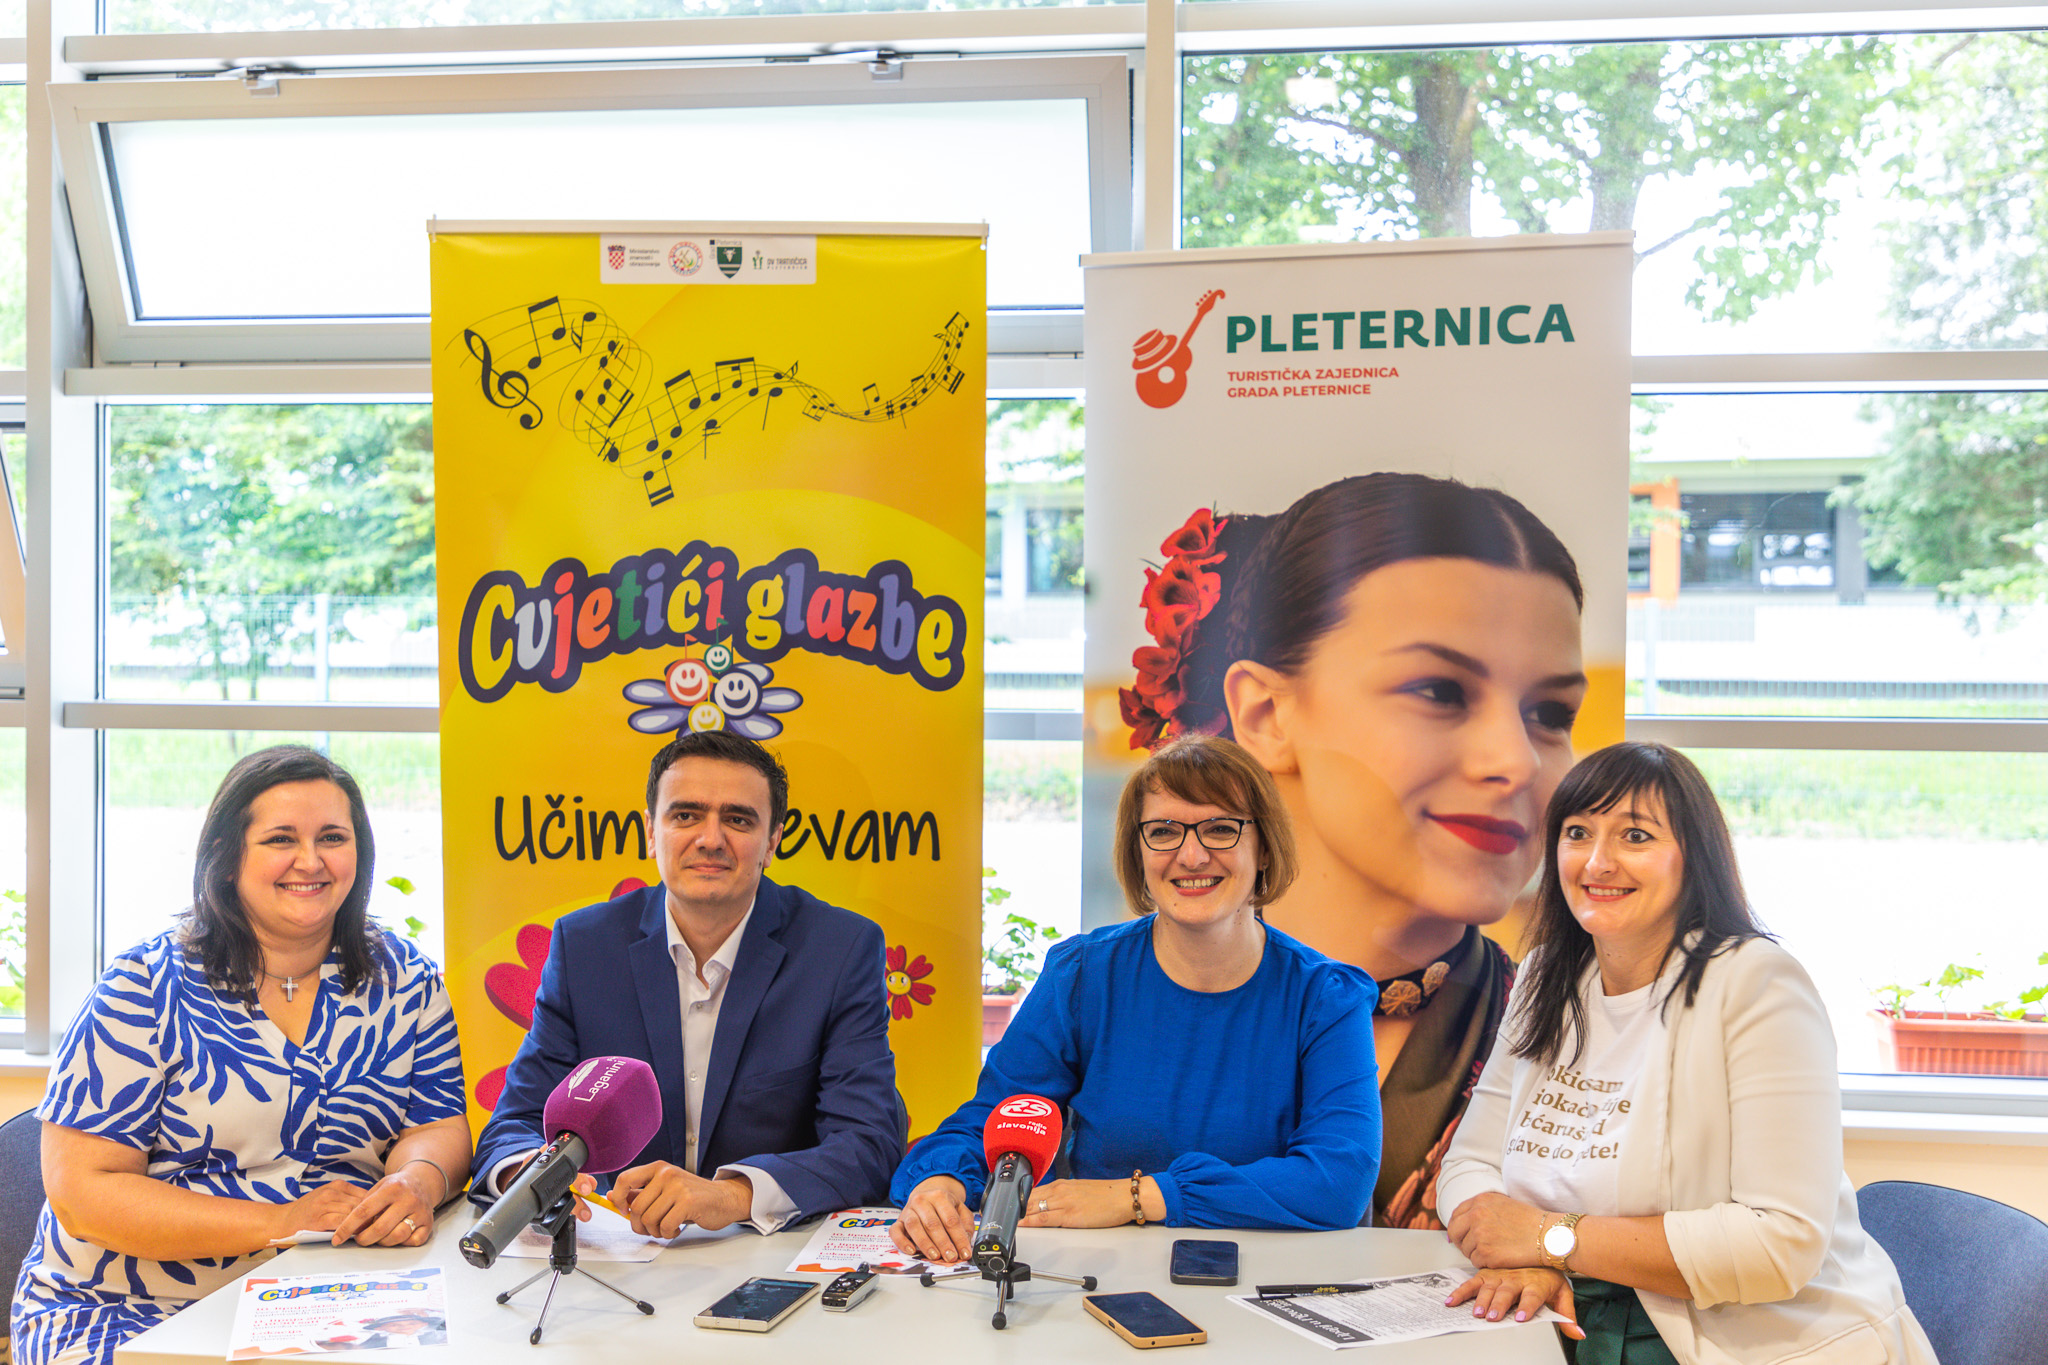 Cvjetići glazbe u Pleternici kreću za vikend: 29 pjesama za 29 godina festivala